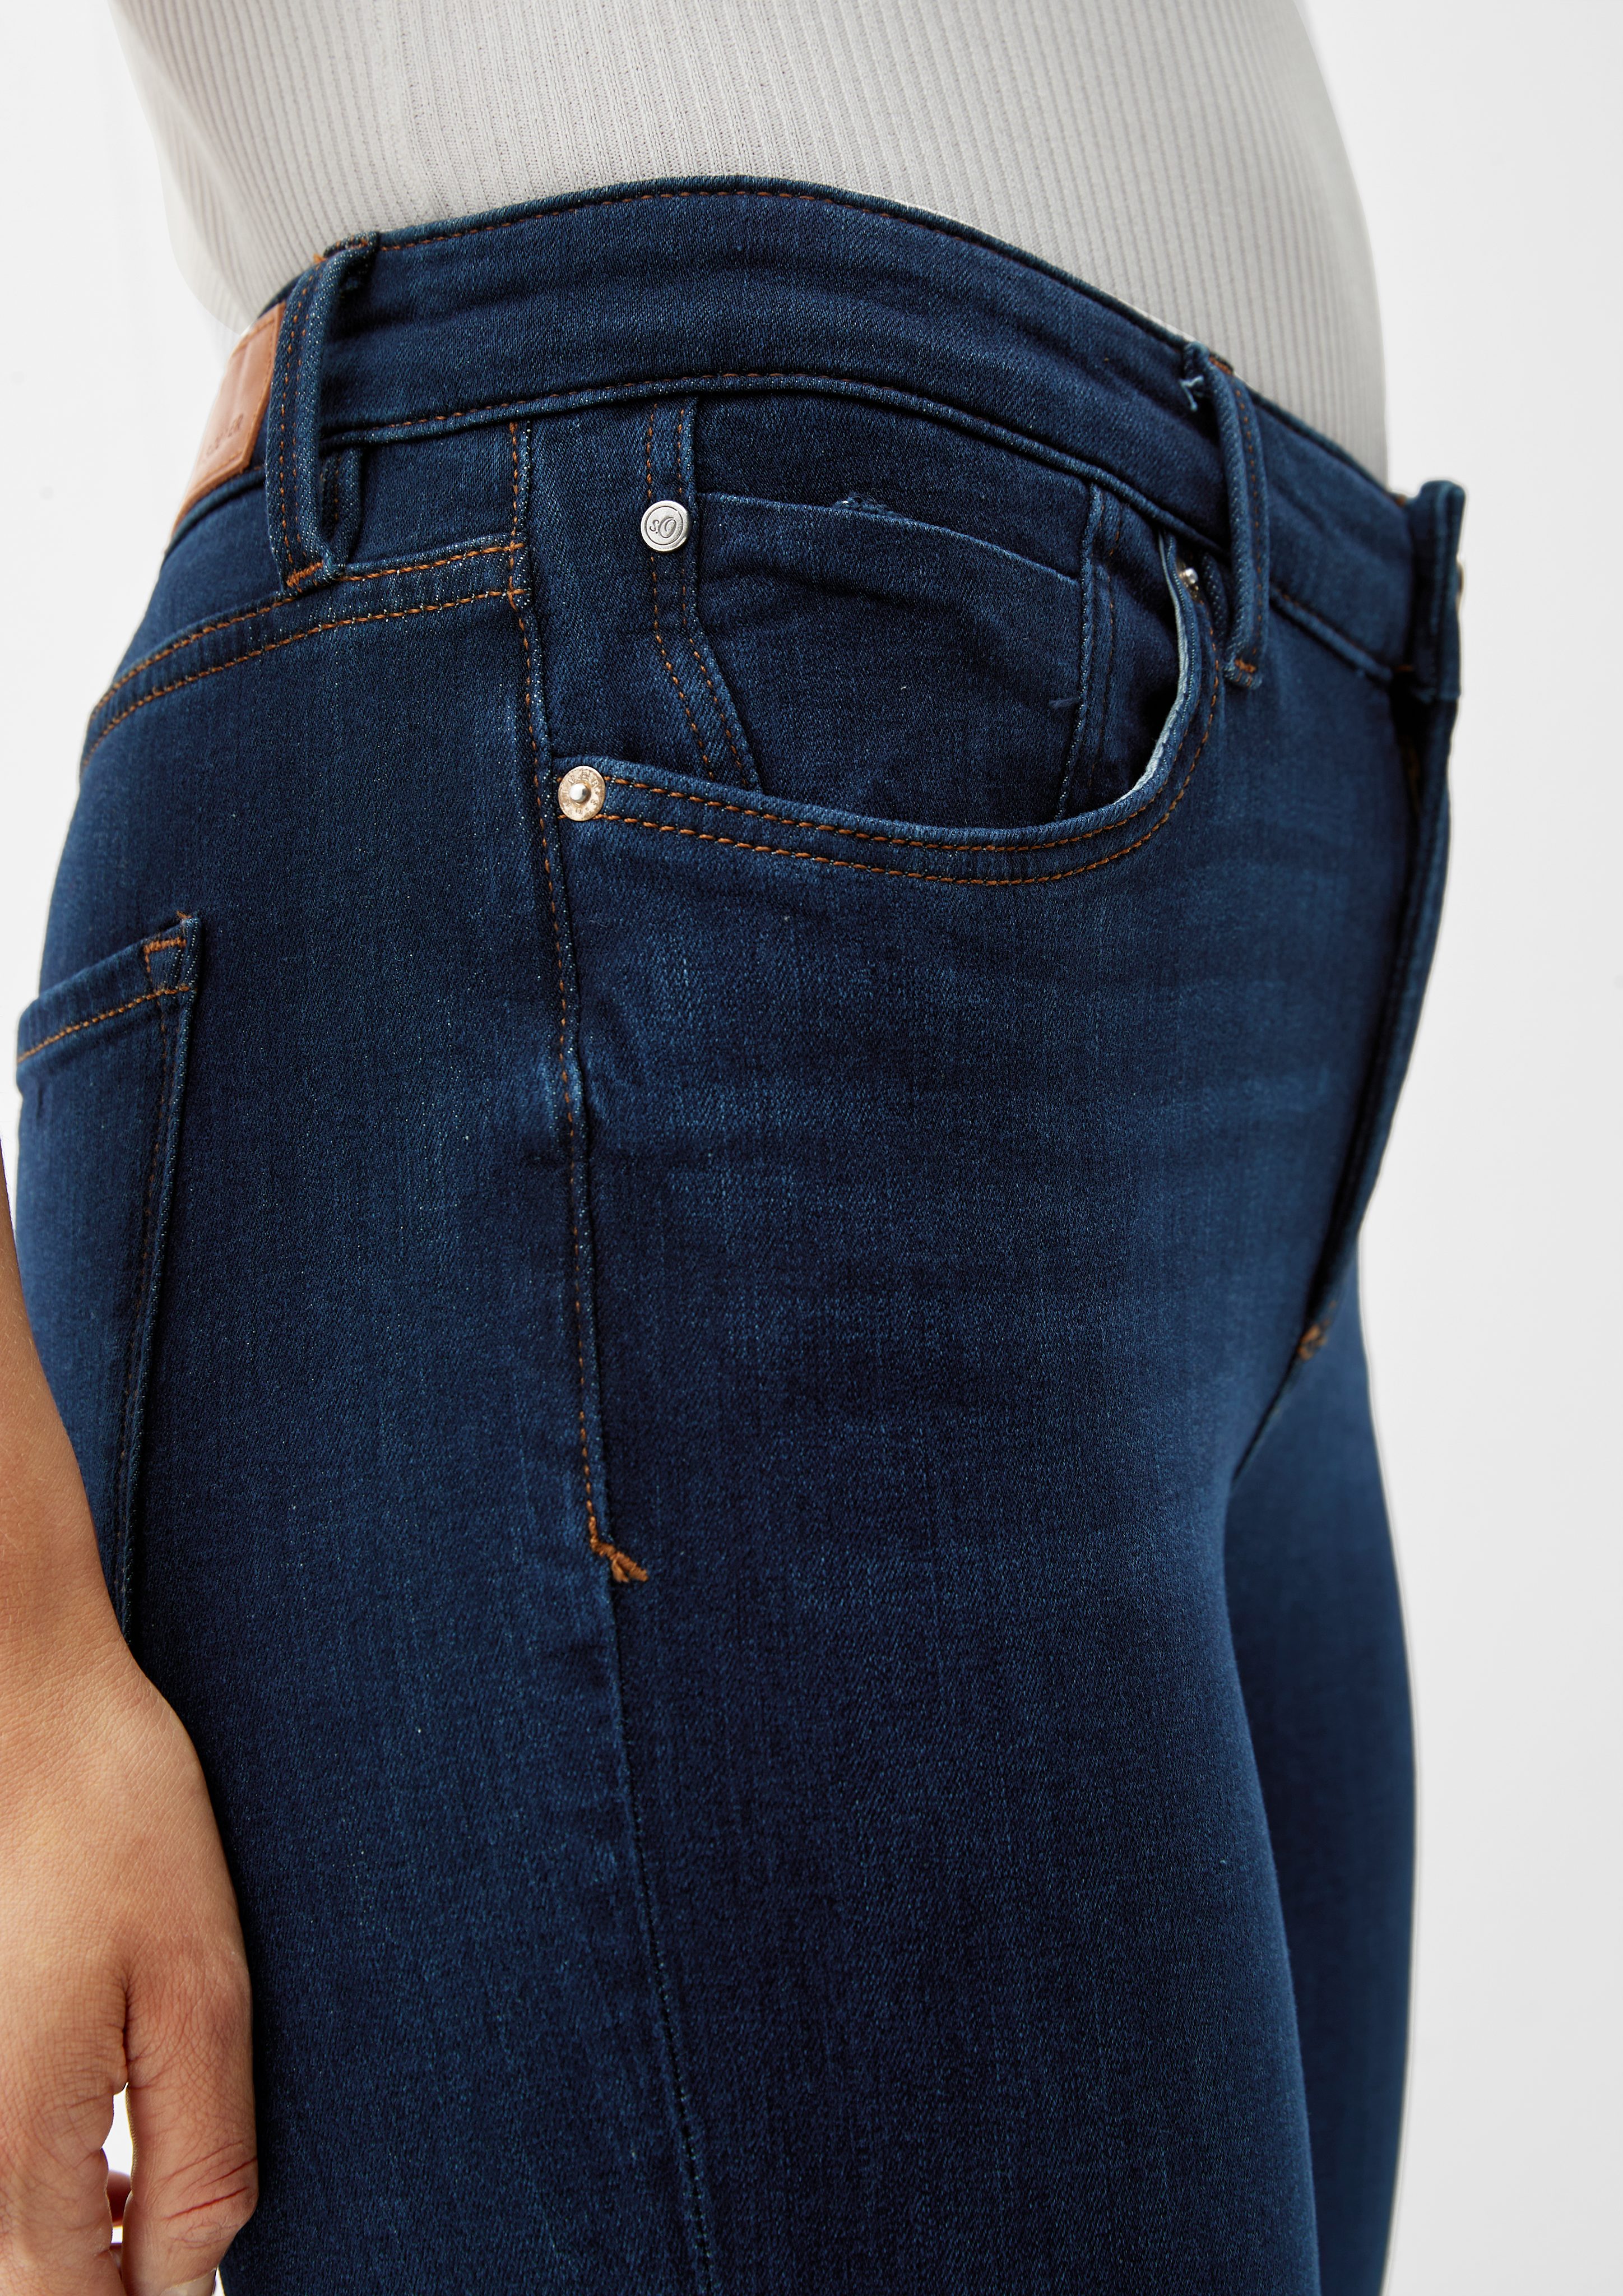 s.Oliver 5-Pocket-Jeans Jeans Izabell dark / / Label-Patch blue Mid / Skinny Fit Rise Leg Skinny